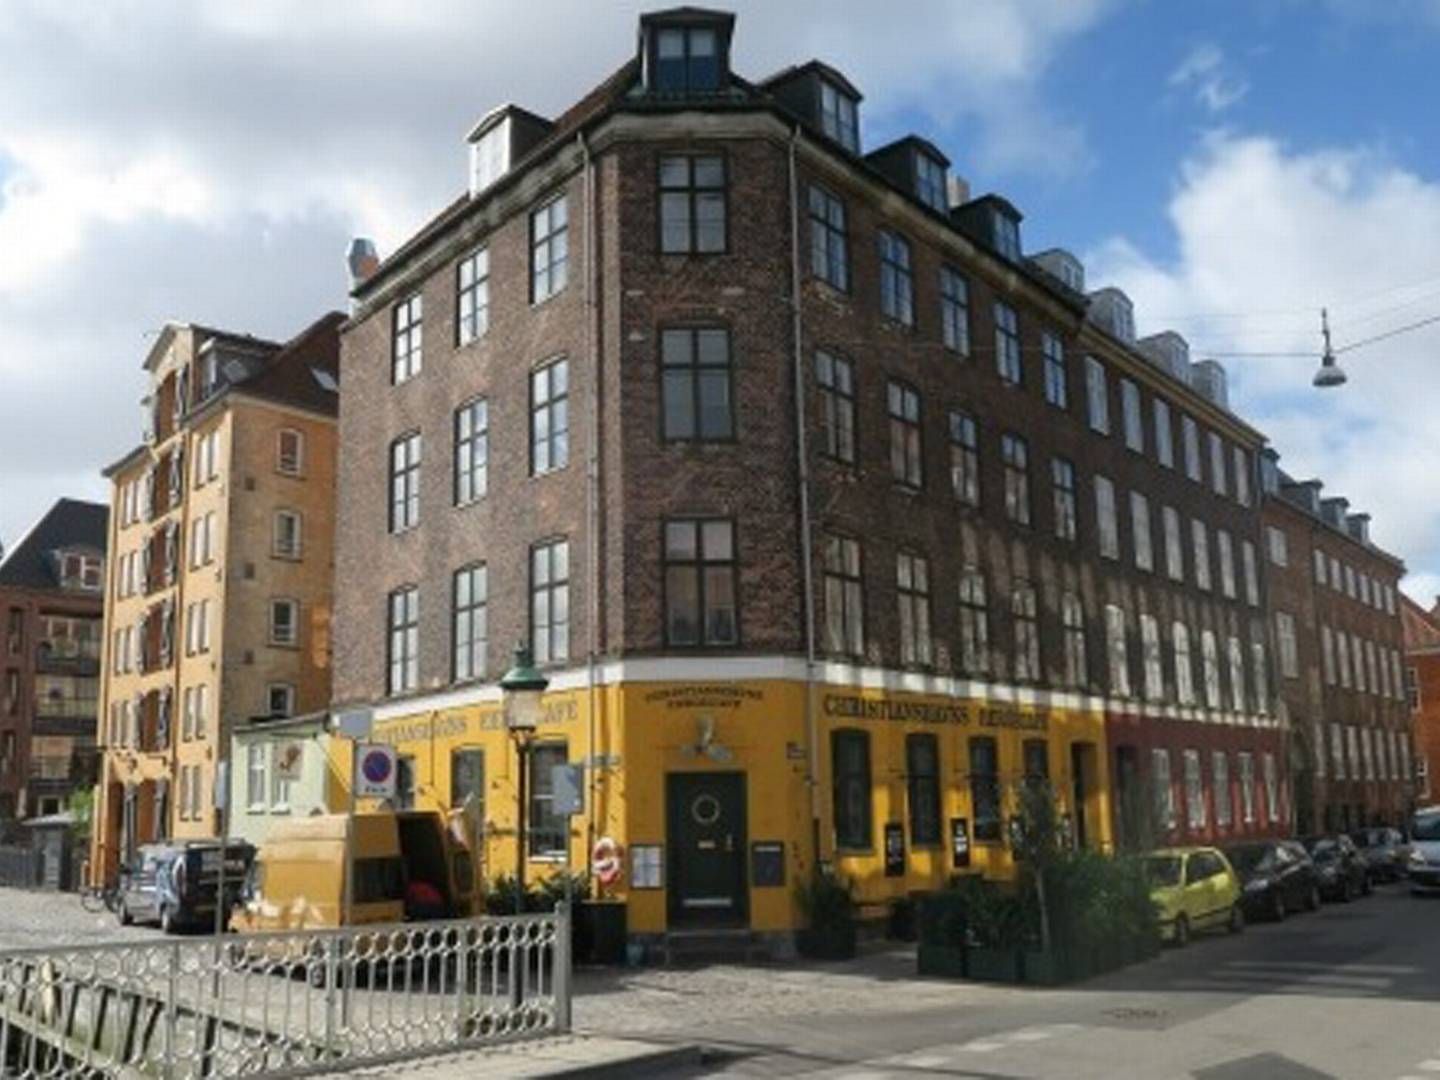 Ejendommen Strandgade 50 i København er blandt de aktiver, som kapitalforvalteren Blackstone har sikret sig det seneste års tid. | Foto: PR